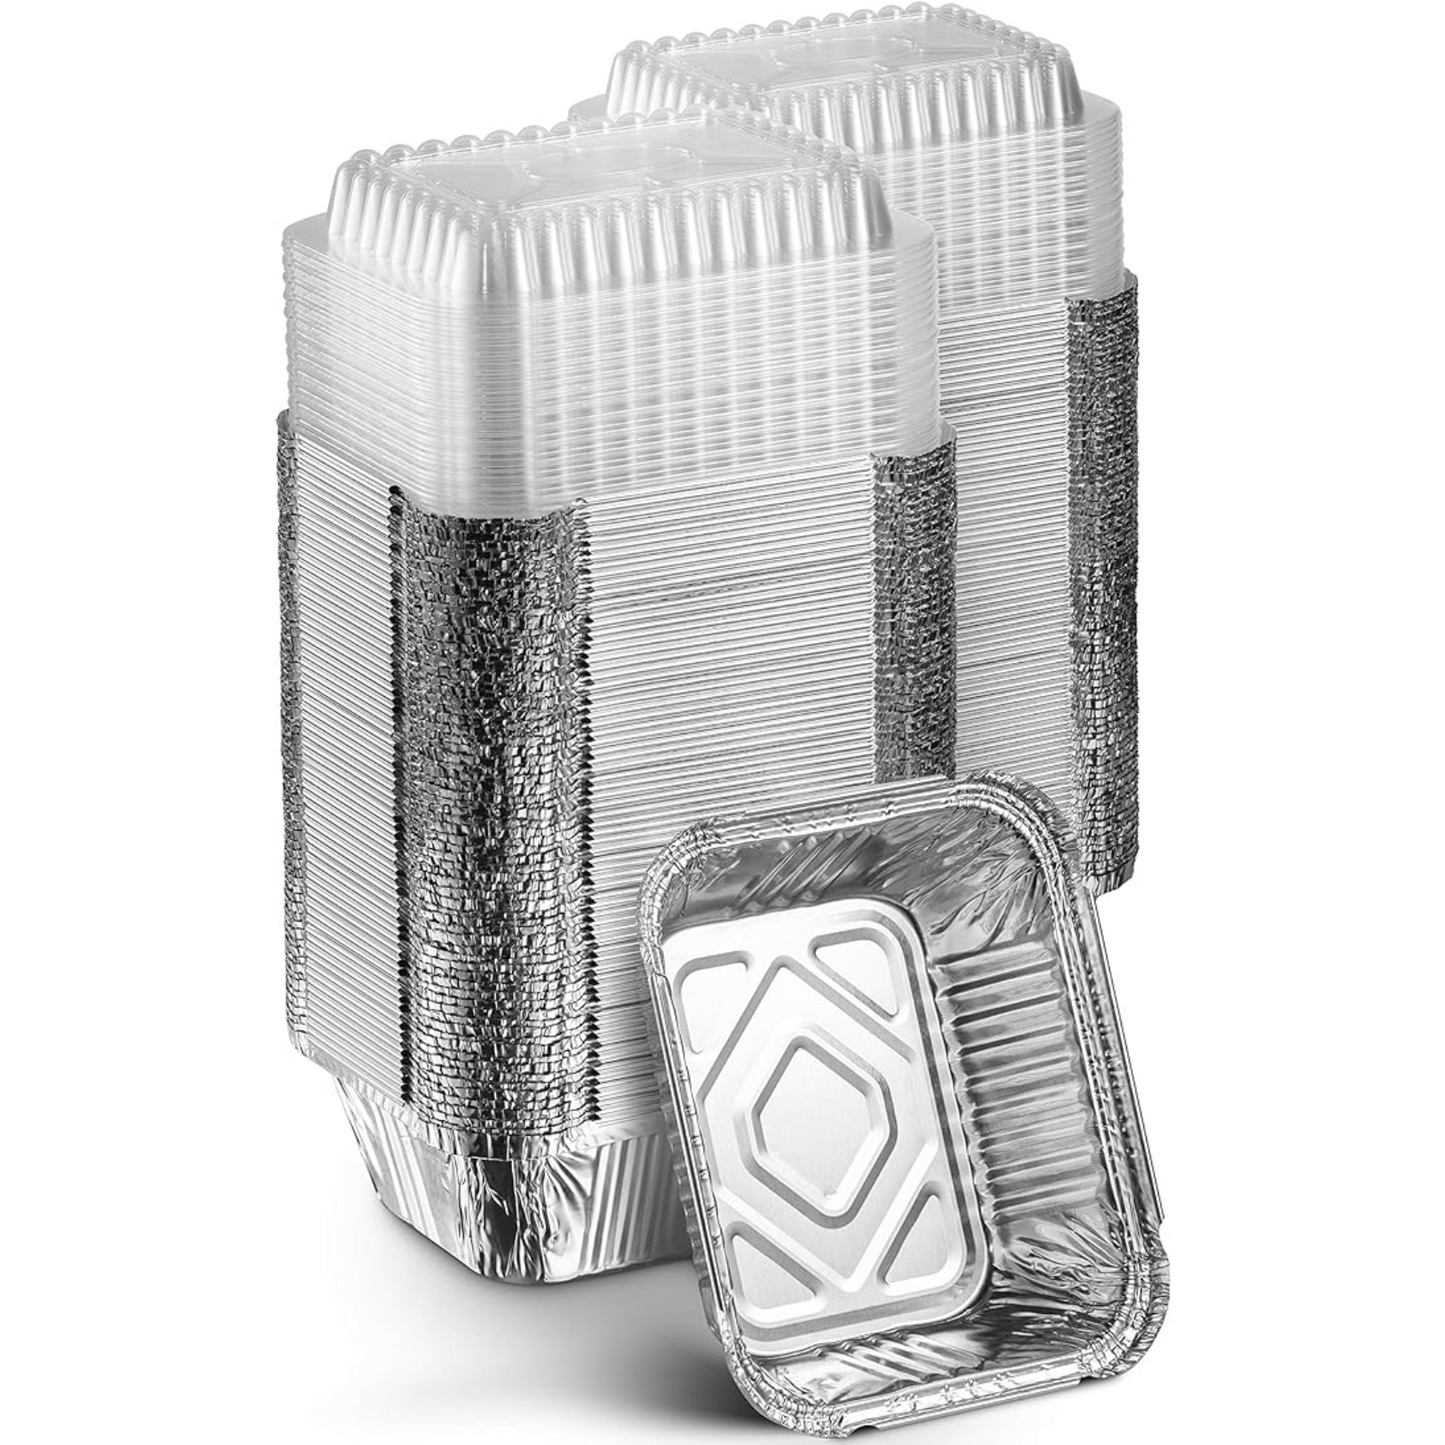 *WHOLESALE* Dome Lids For 1Lb Aluminum Oblong Pans 5" x 4" | 1000 ct/case Disposable VeZee   